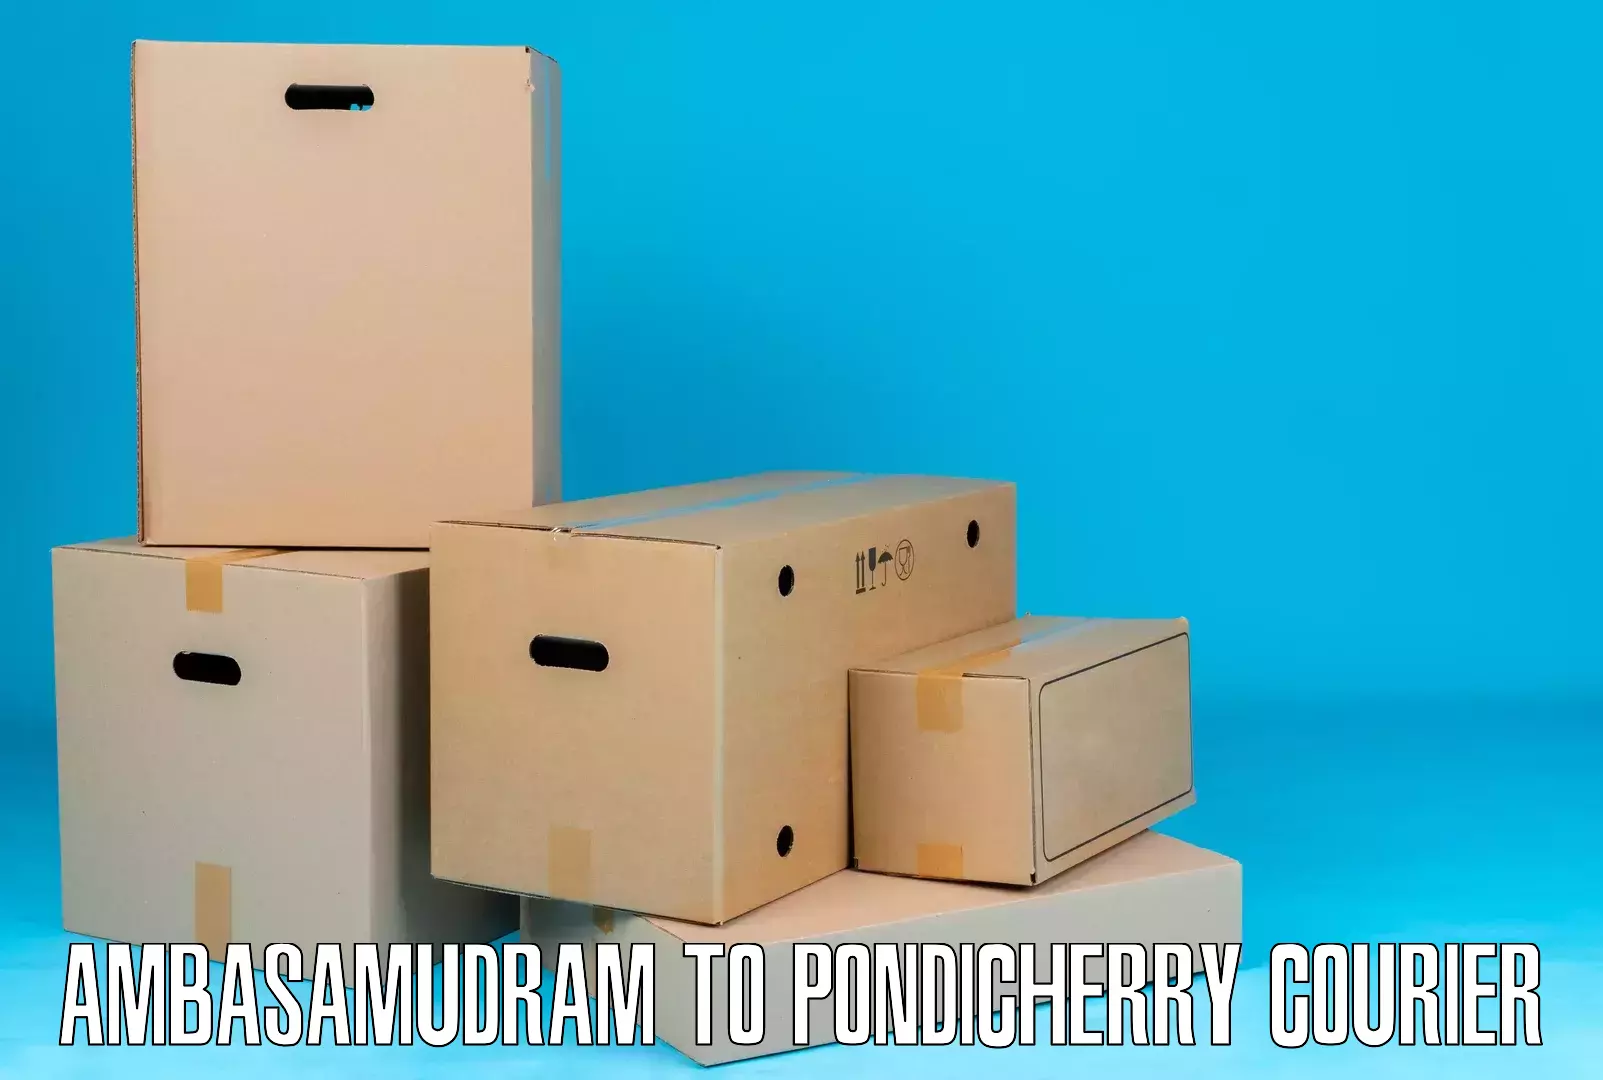 Tech-enabled shipping Ambasamudram to Metttupalayam